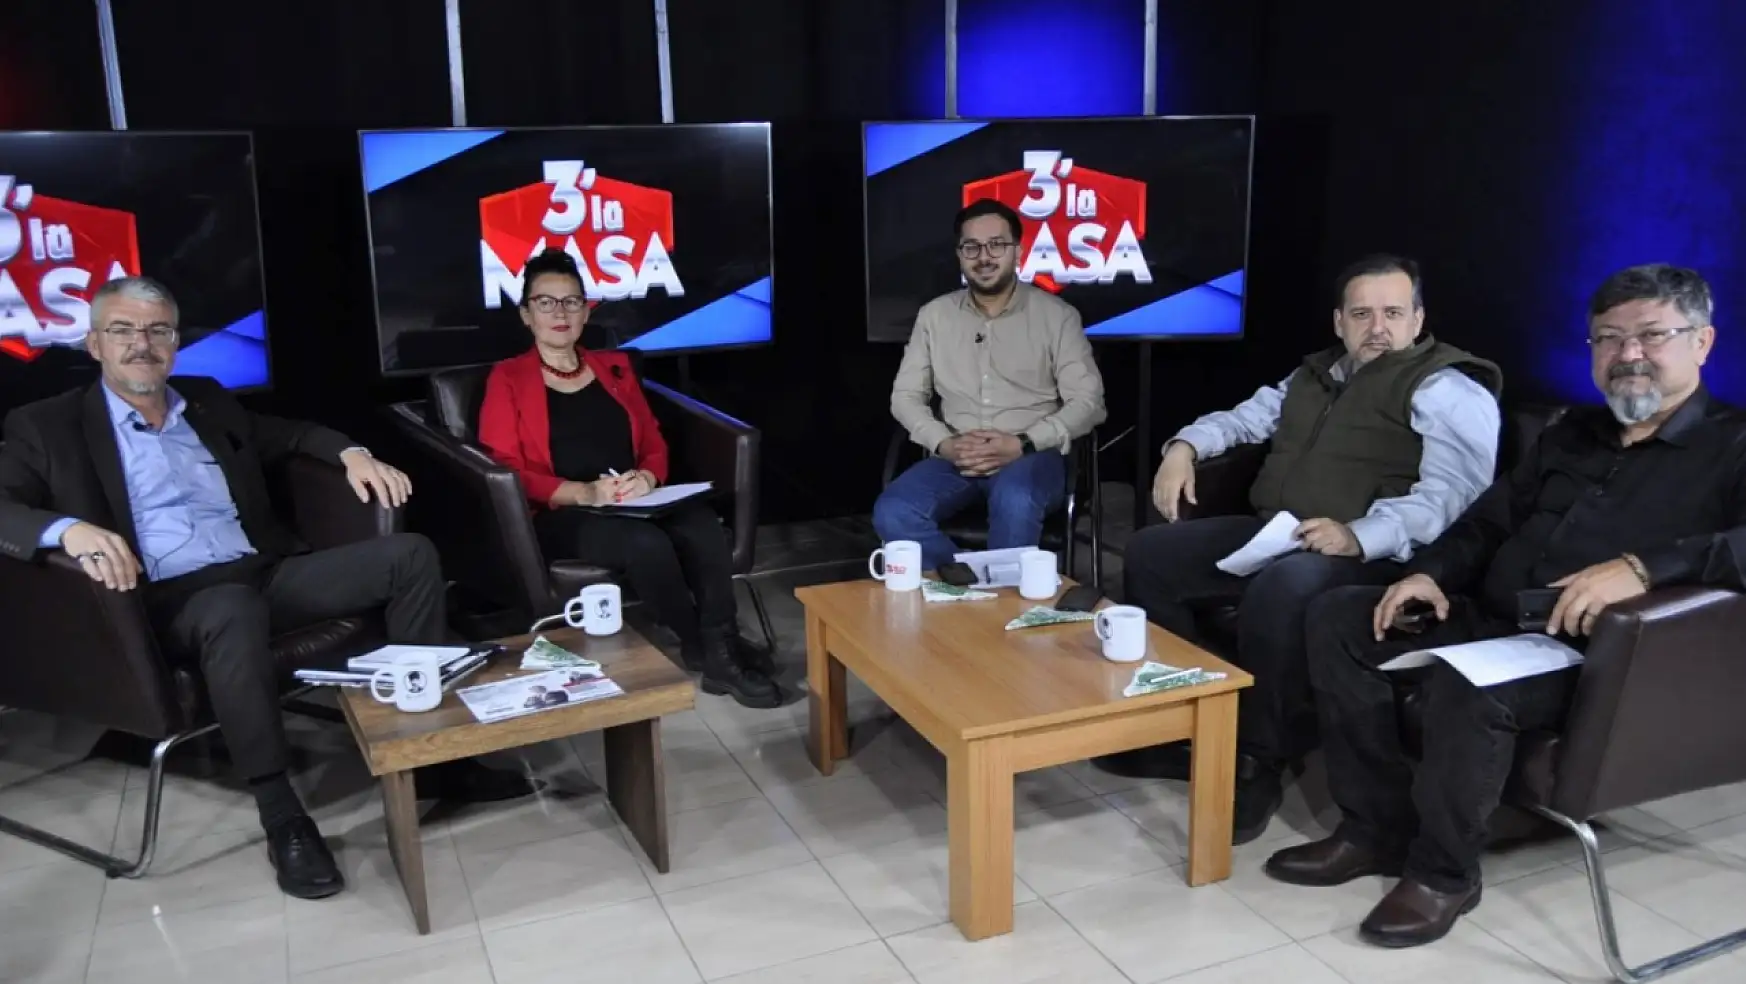 Zafer Partisi Fethiye ve Büyükşehir adayları 3'lü Masa'ya konuk oldu